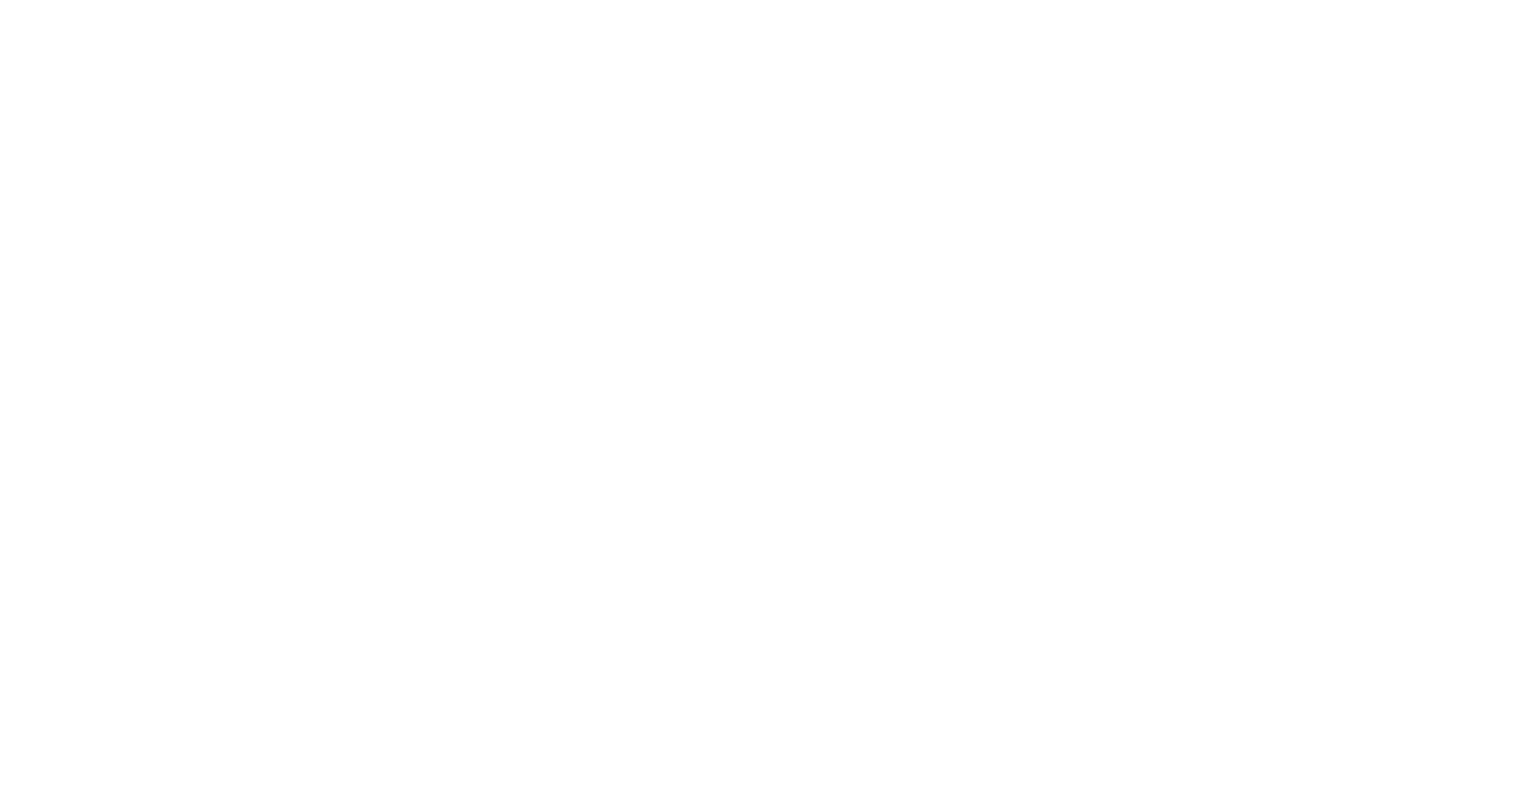 Кейс сервиса BRANDNATION - Дизайн упаковки носков. Брендинговое агентство BRANDNATION в Москве и Санкт-Петербурге. Услуги: разработка логотипа и фирменного стиля, дизайн упаковки, брендбук, ребрендинг, разработка сайта.